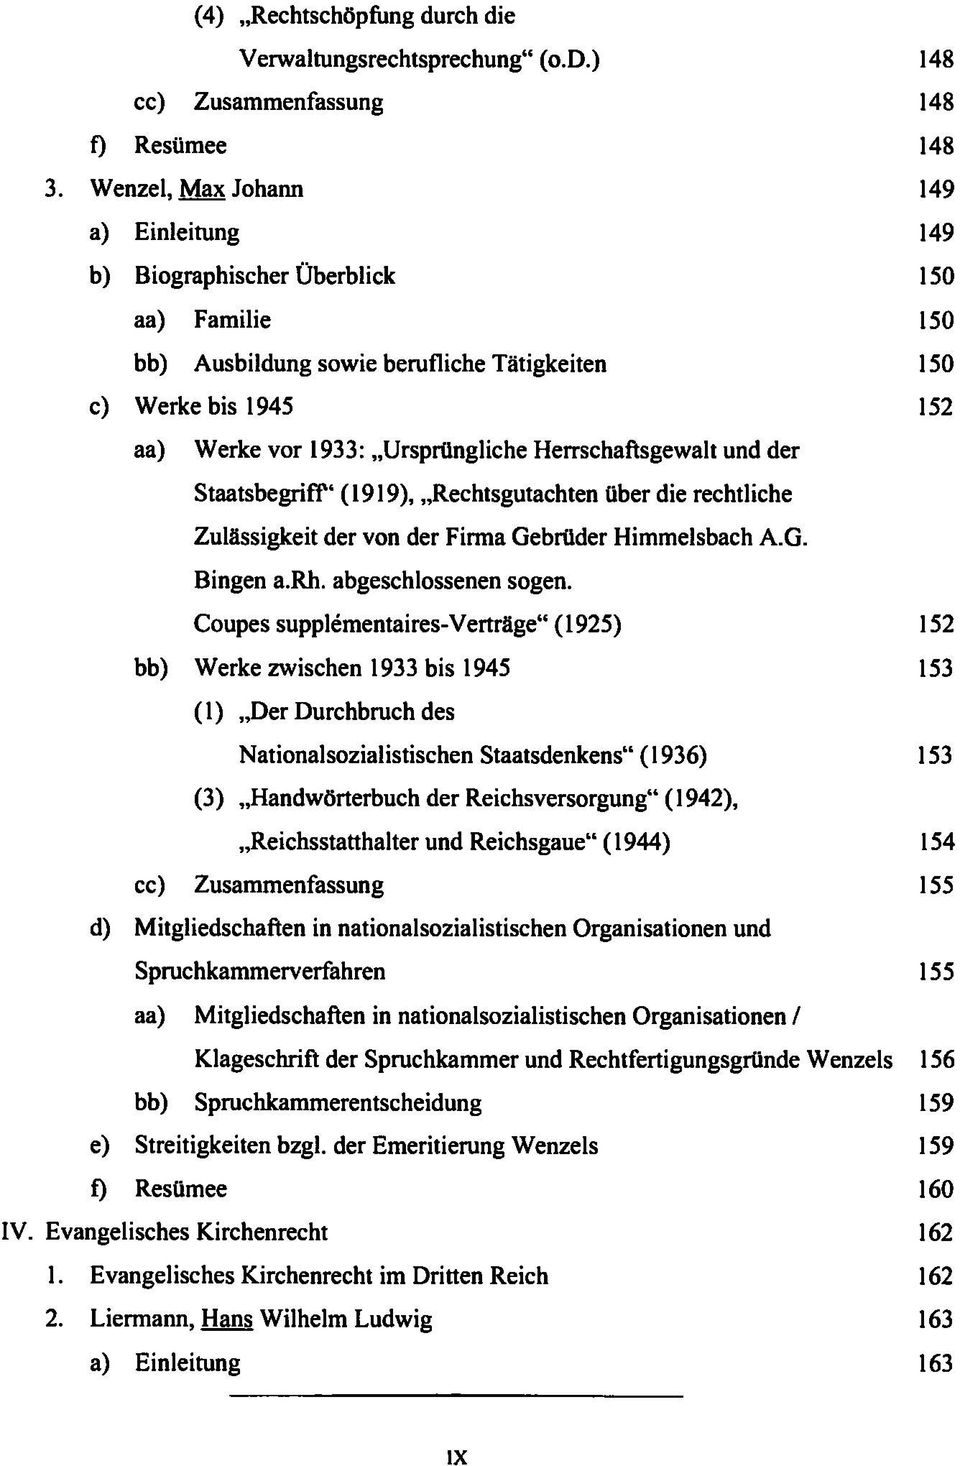 Herrschaftsgewalt und der StaatsbegrifF' (1919), Rechtsgutachten über die rechtliche Zulässigkeit der von der Firma Gebrüder Himmelsbach A.G. Bingen a.rh. abgeschlossenen sogen.